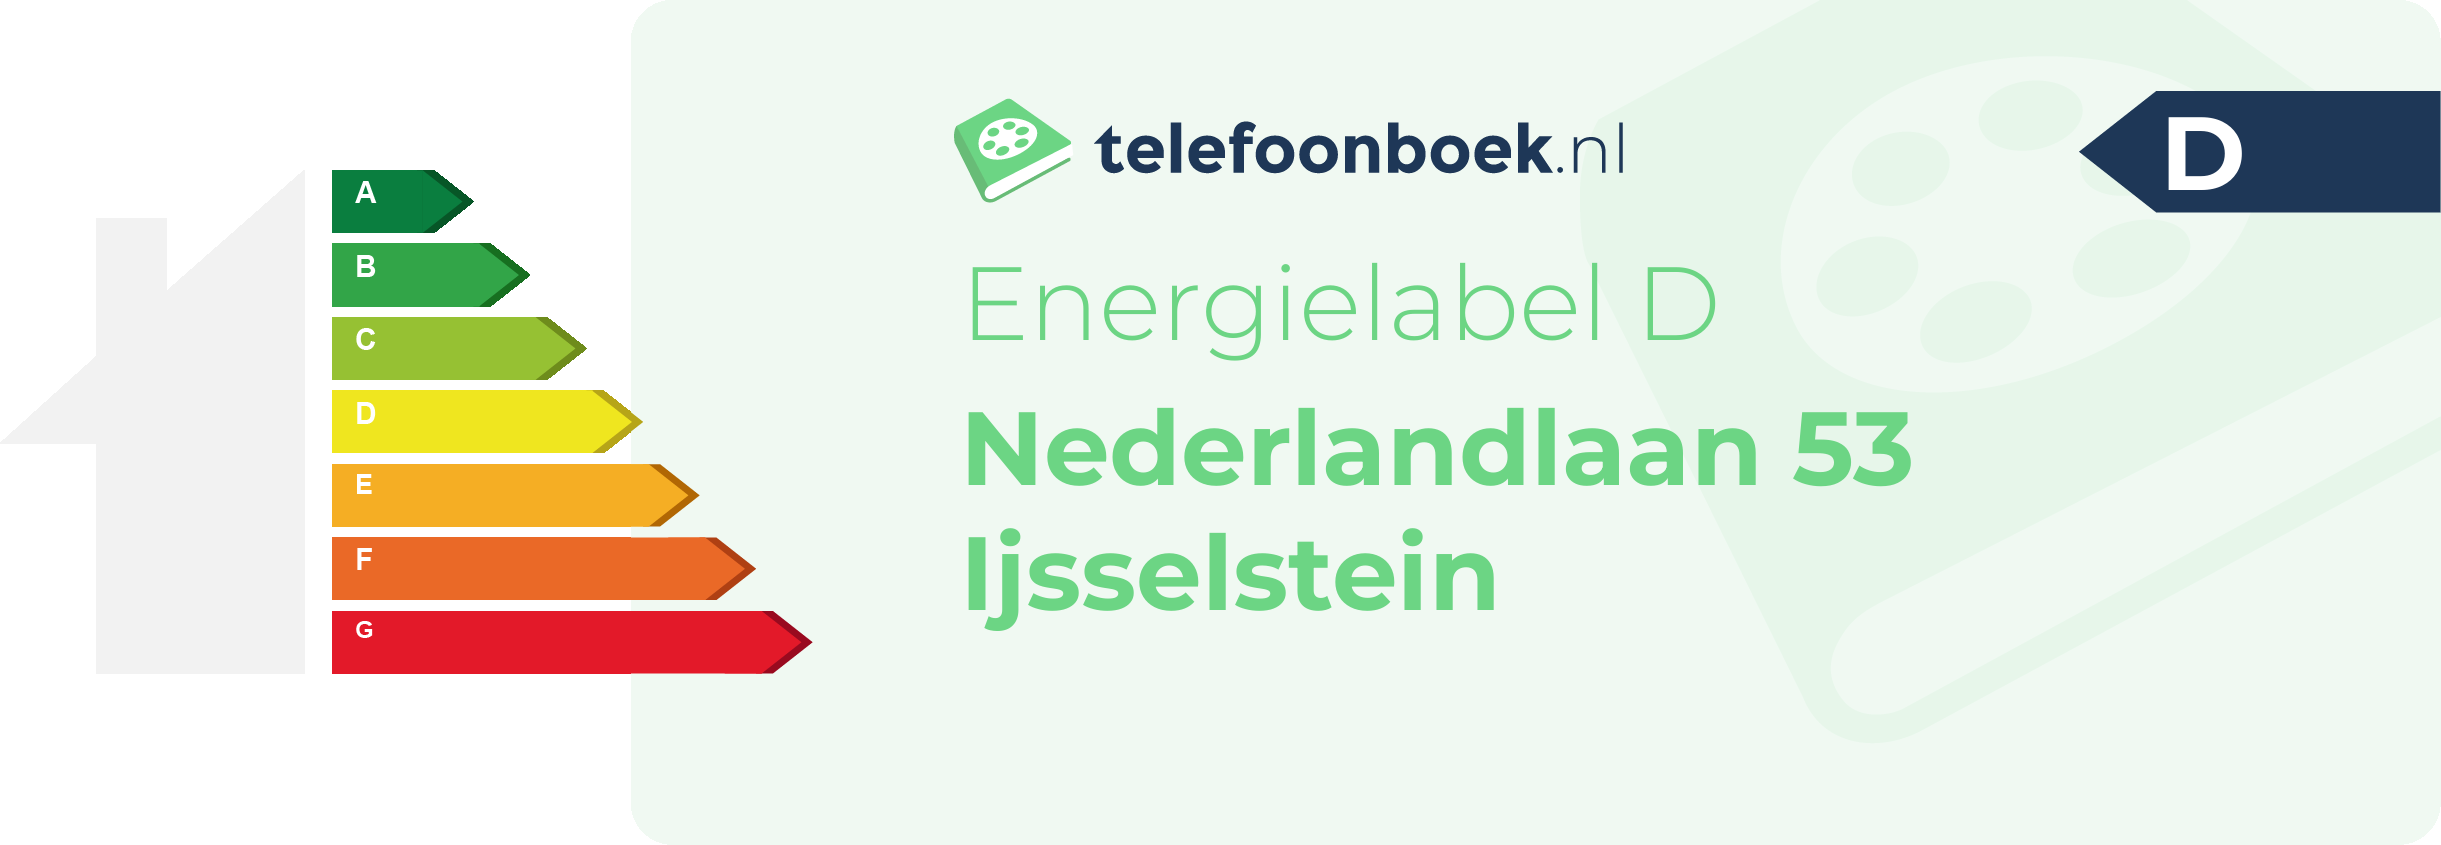 Energielabel Nederlandlaan 53 Ijsselstein